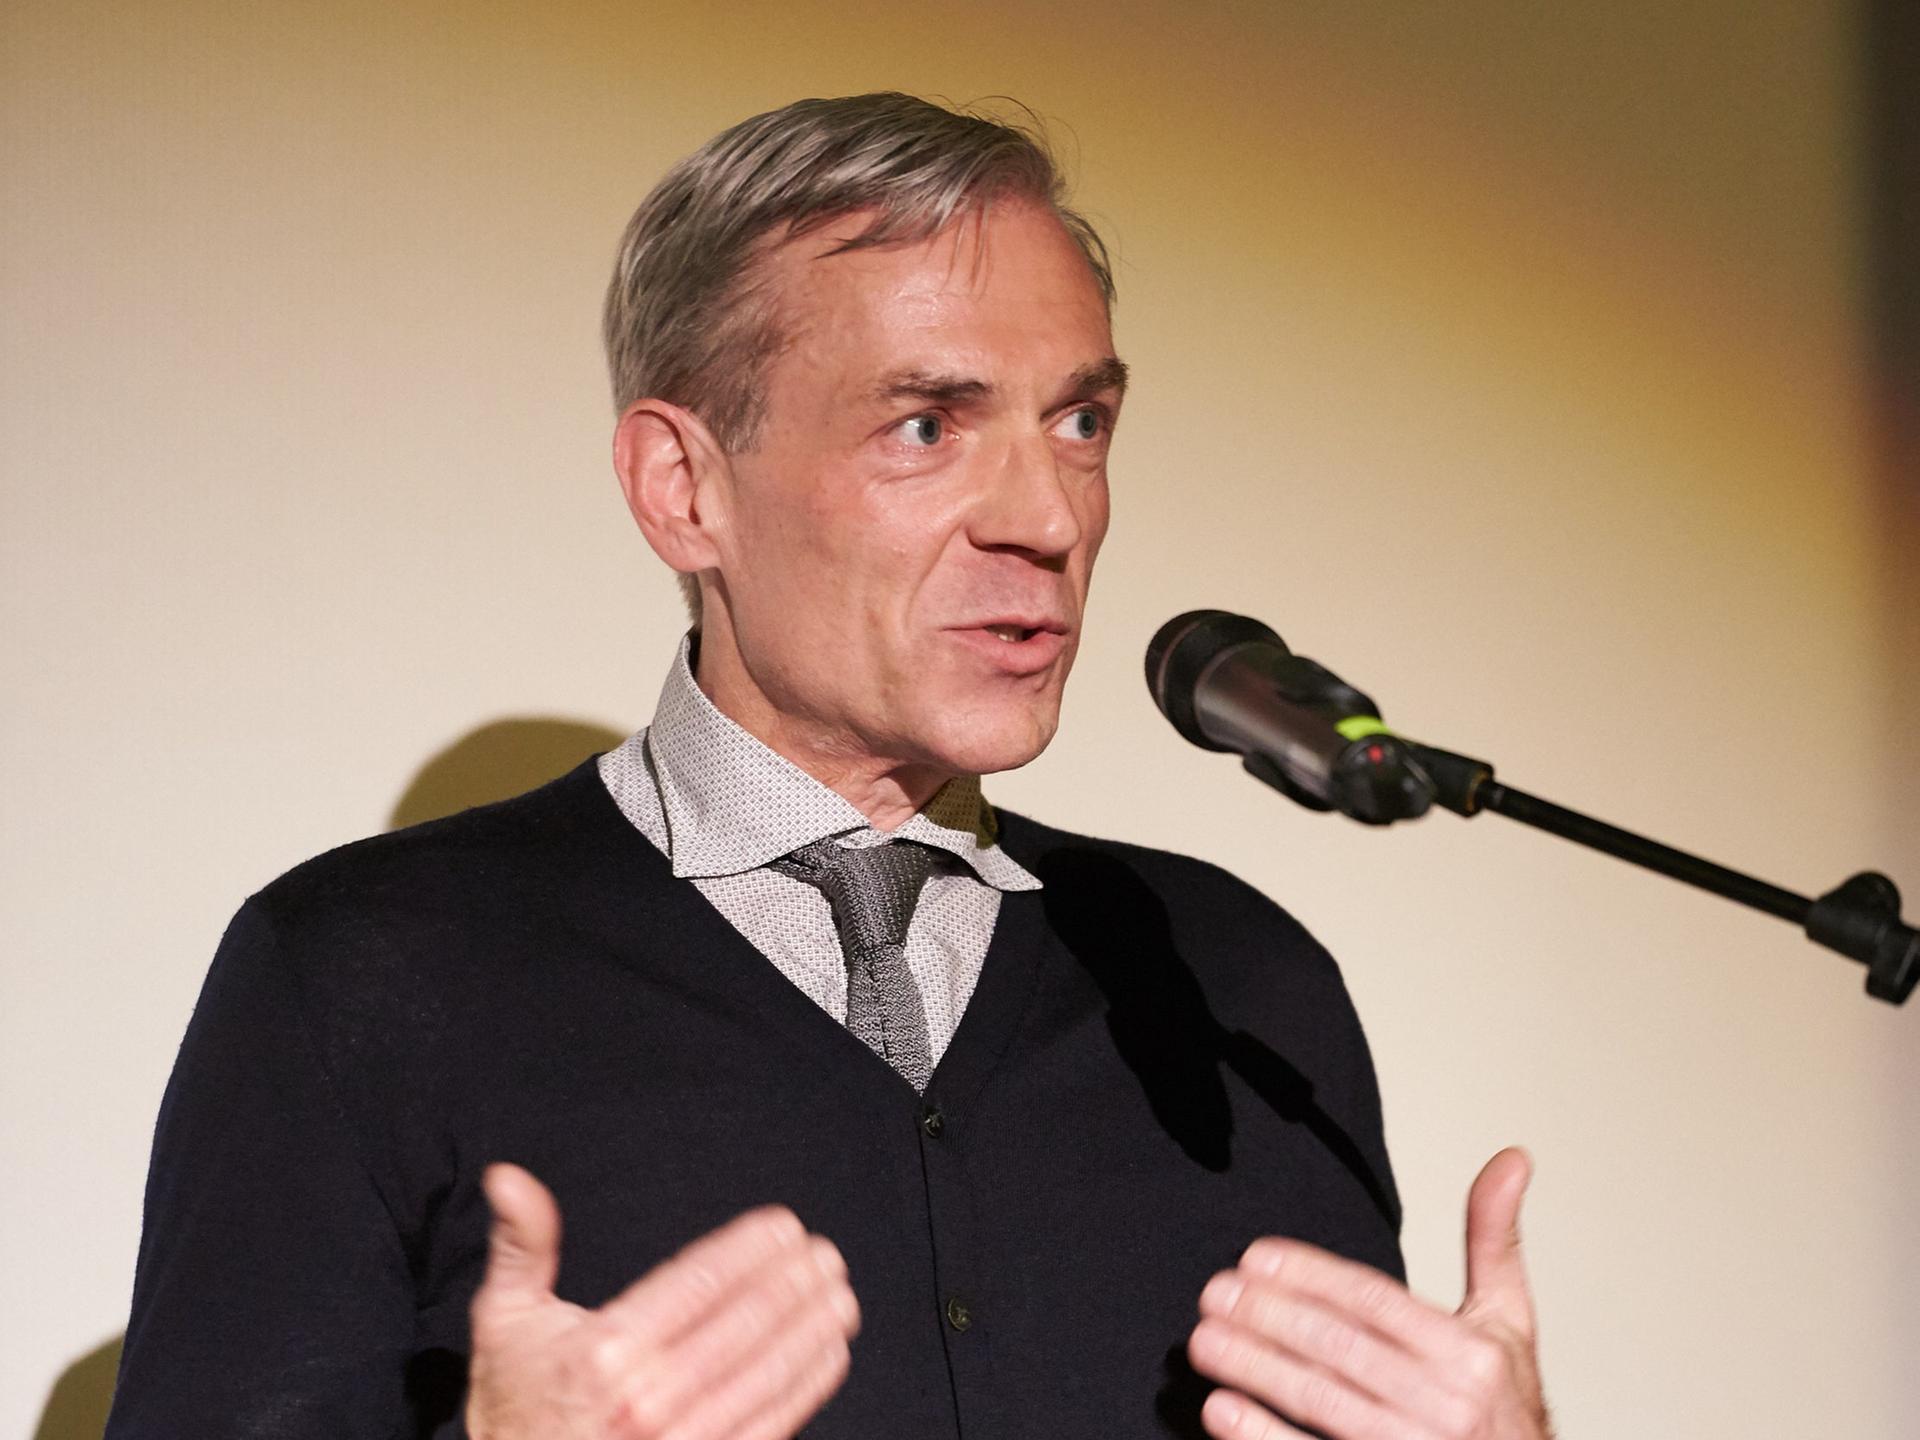 Lars Henrik Gass spricht auf einem Podium in ein Mikrofon. Er trägt kurz geschnittenes graues Haar und einen schwarzen Pullover.